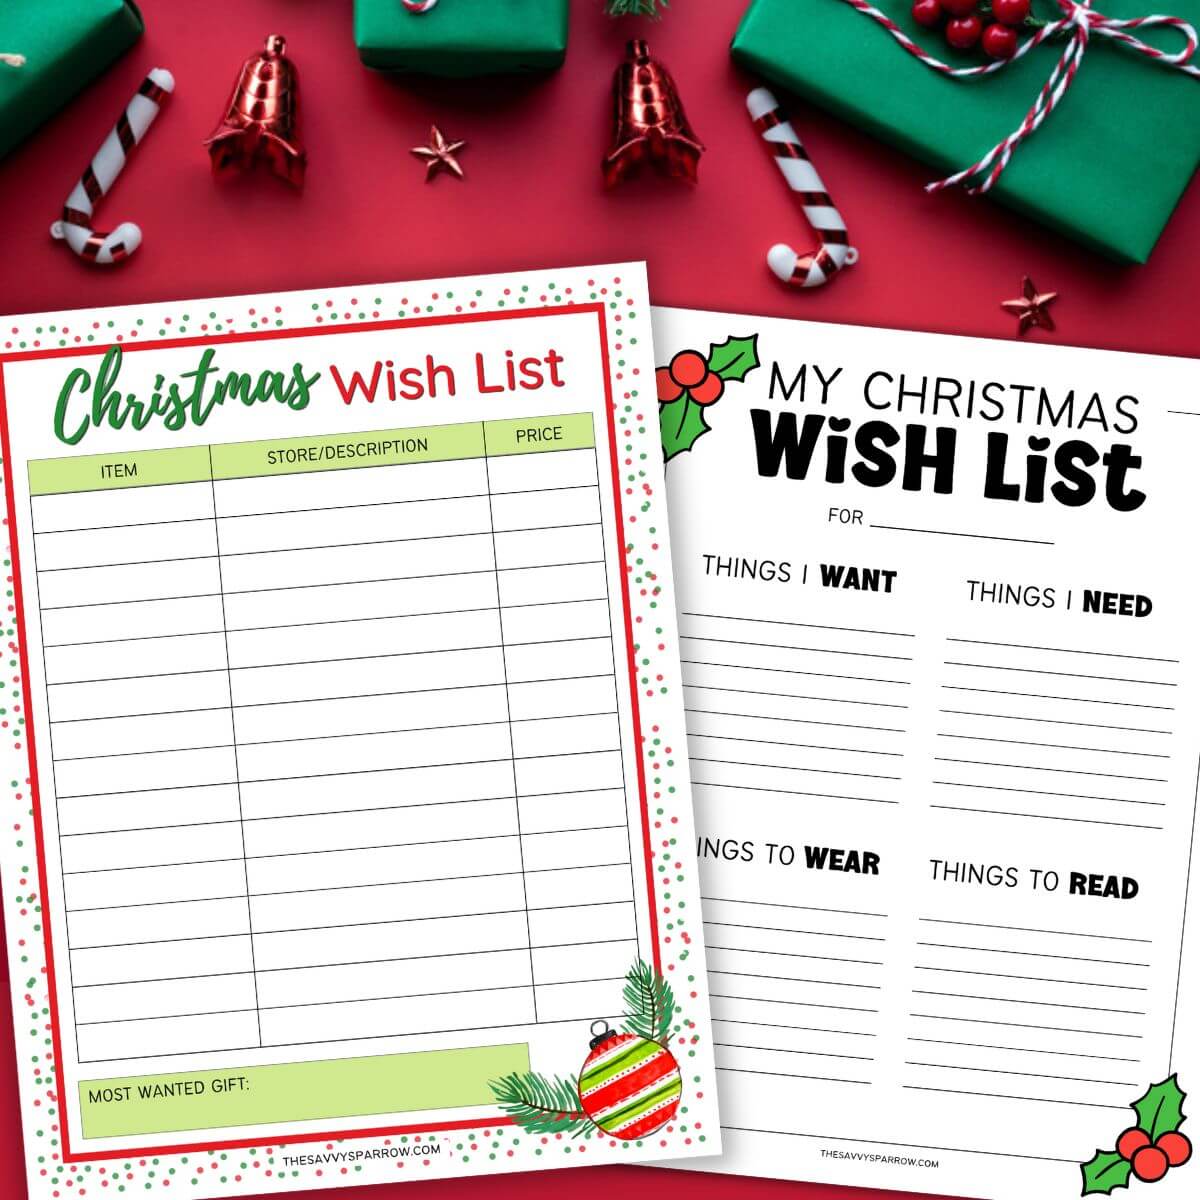 Wish List Printable